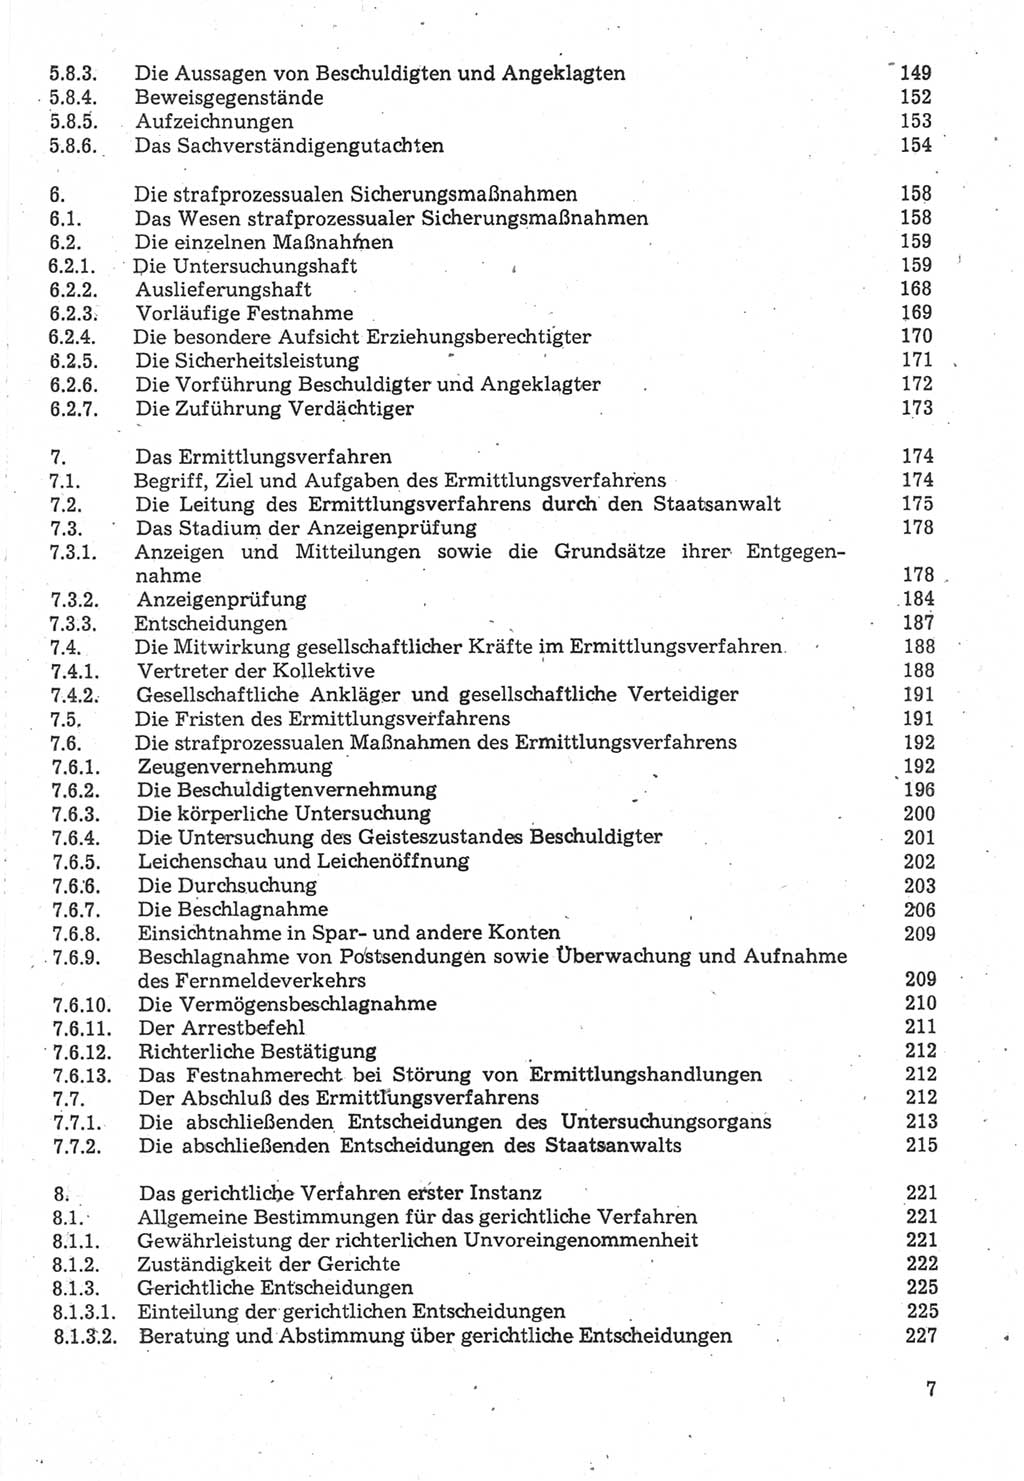 Strafverfahrensrecht [Deutsche Demokratische Republik (DDR)], Lehrbuch 1987, Seite 7 (Strafverf.-R. DDR Lb. 1987, S. 7)